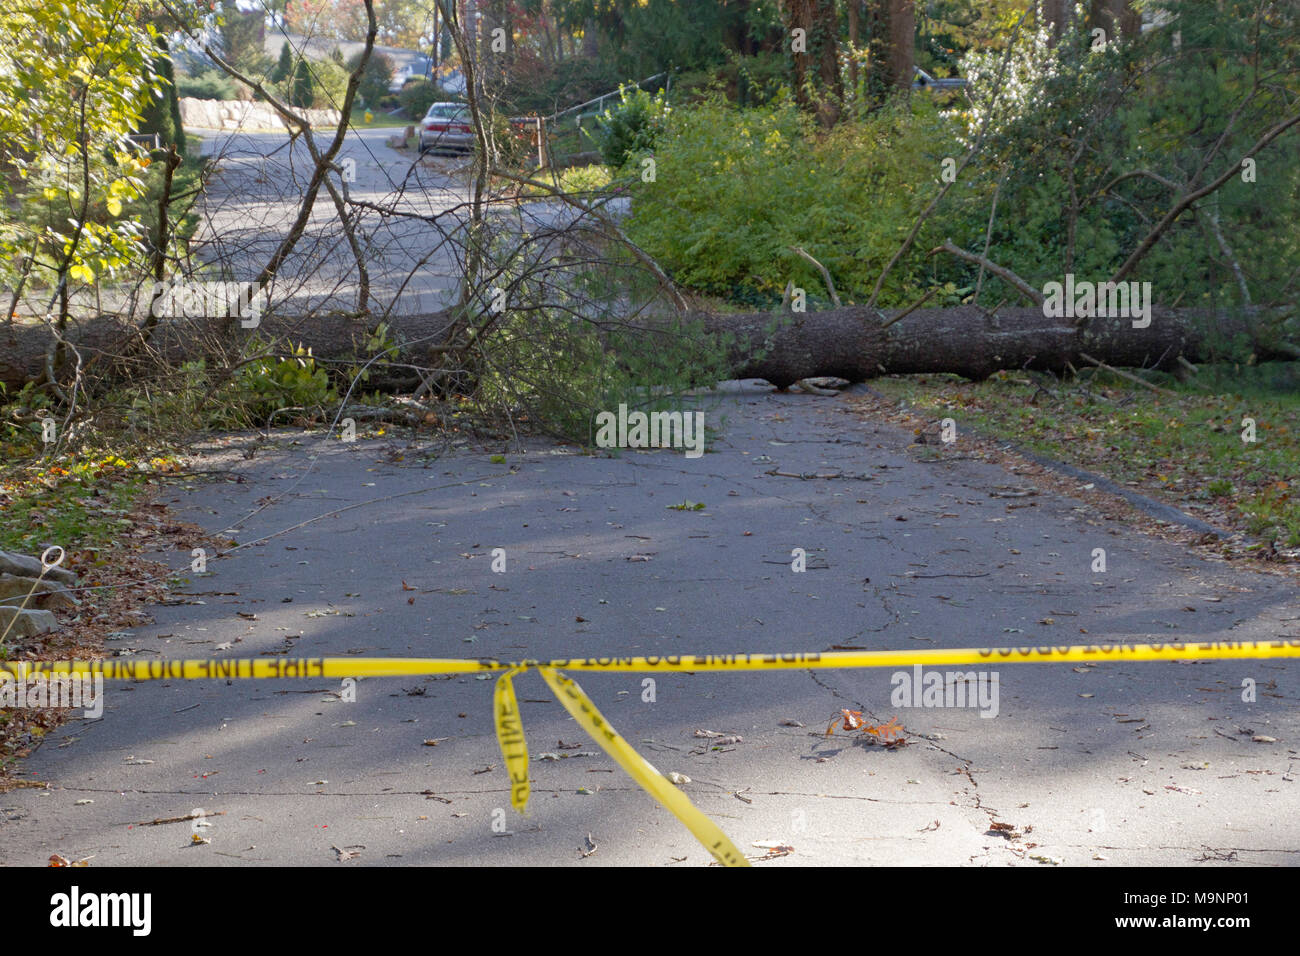 Ruban adhésif jaune avertissement de ne pas traverser une zone dangereuse de cordes où un grand arbre et des fils électriques sont tombés vers le bas à travers une route de quartier Banque D'Images